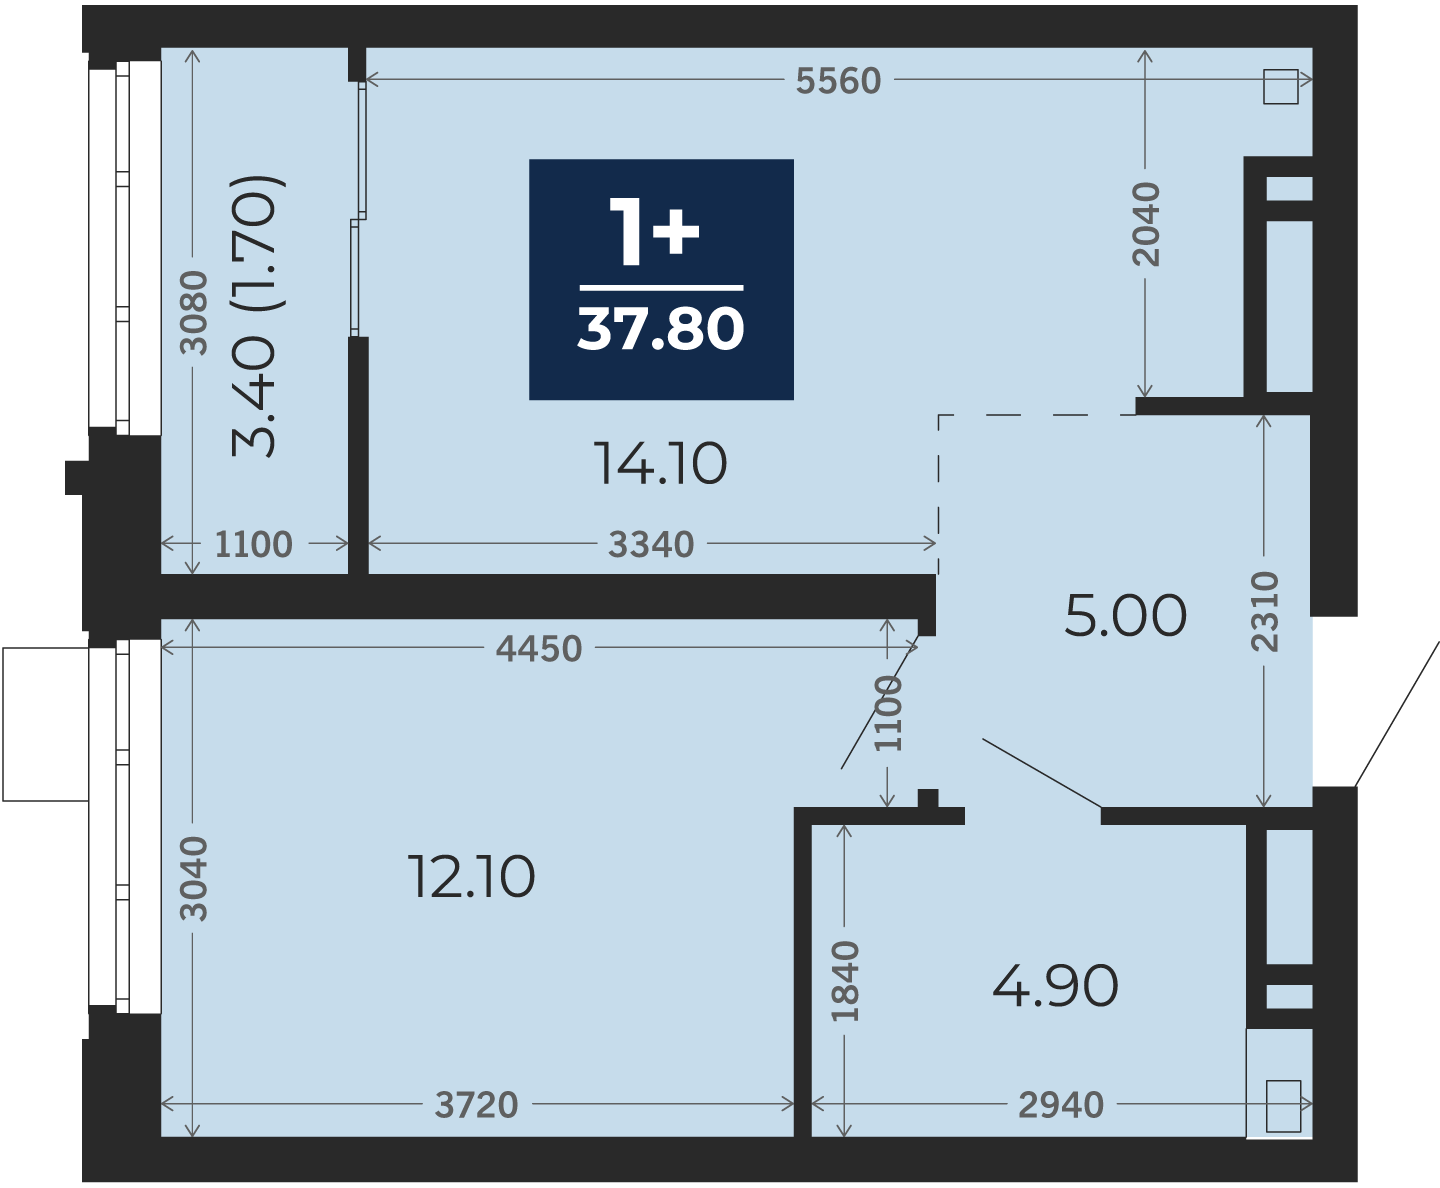 Квартира № 126, 1-комнатная, 37.8 кв. м, 6 этаж